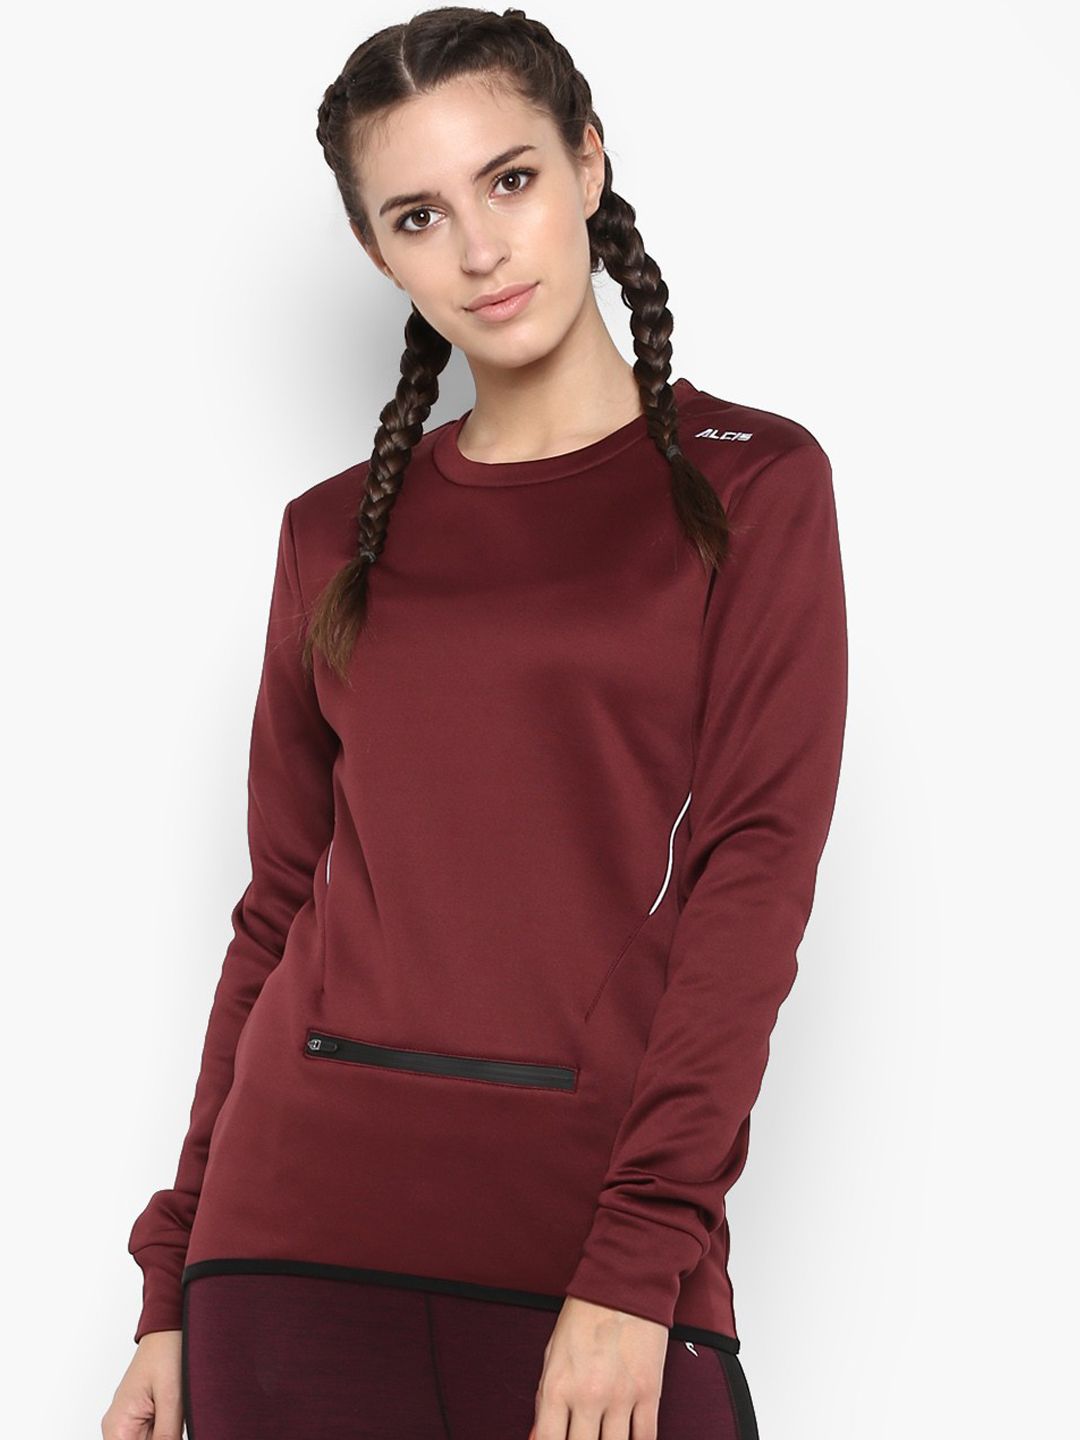 Alcis Women Maroon Solid Sweatshirt Price in India